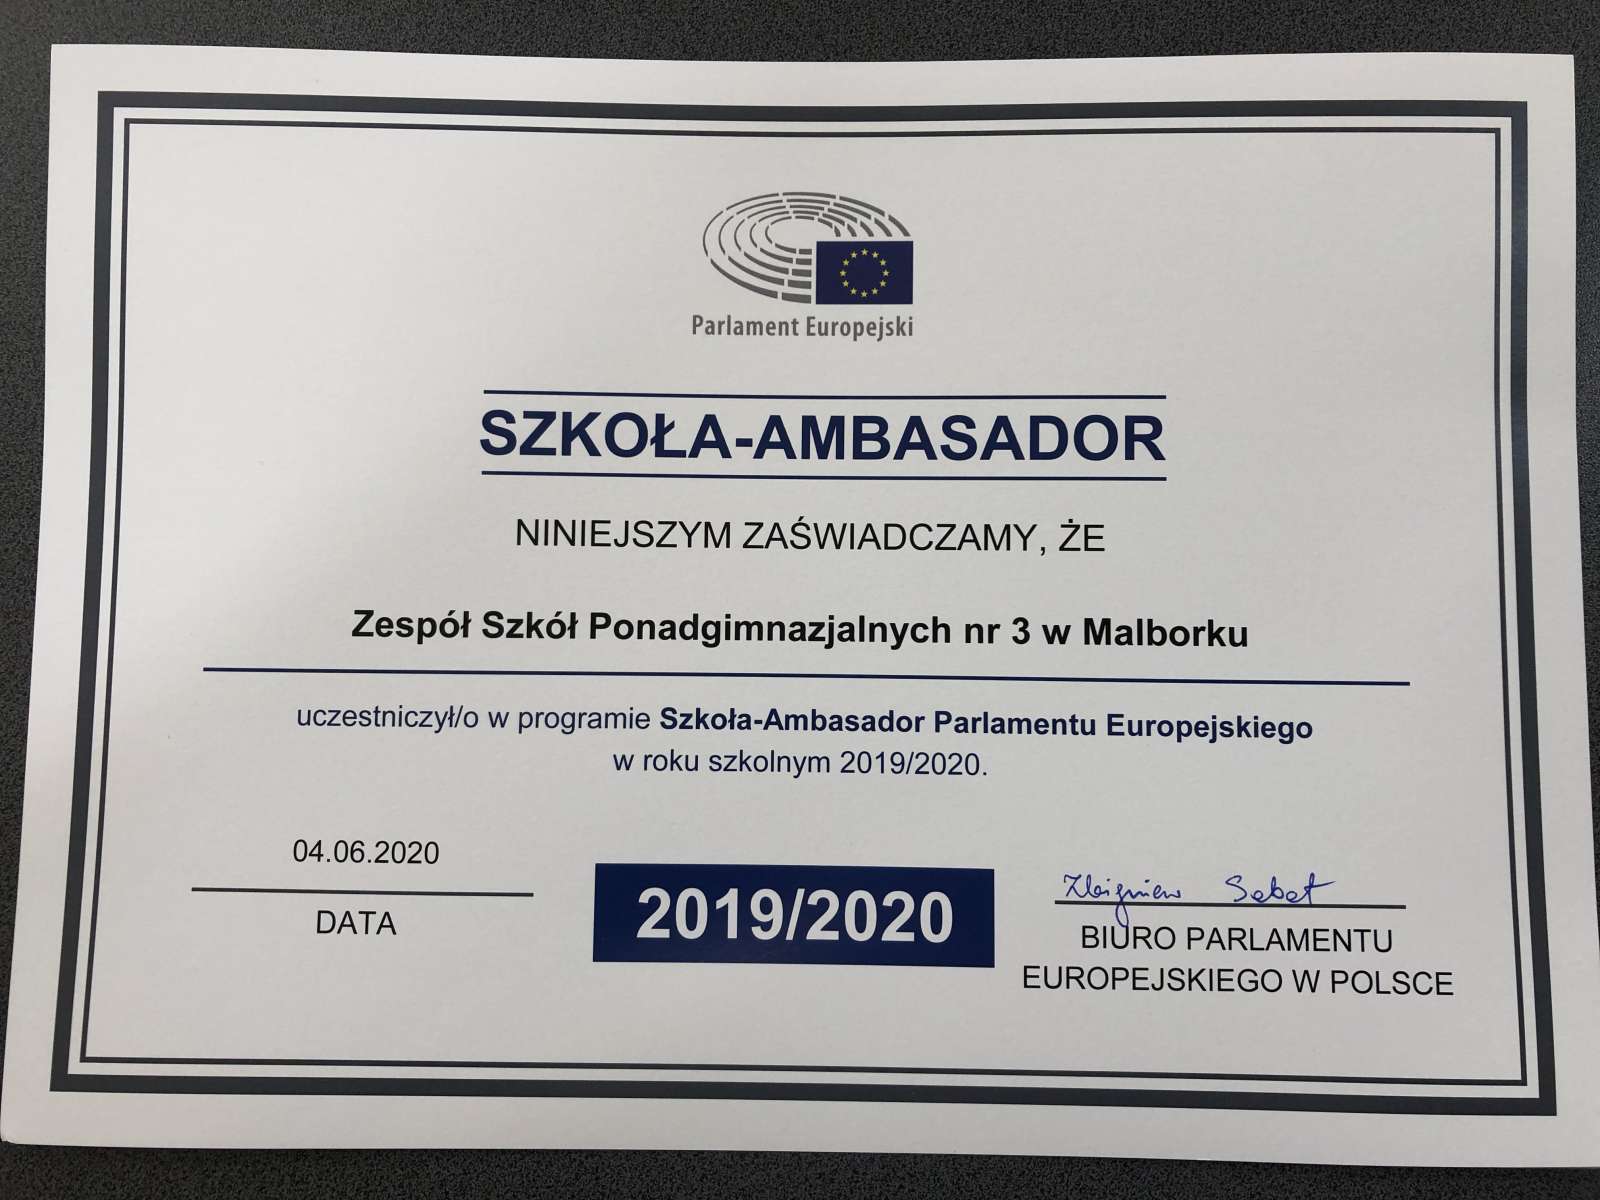 ZSP nr 3 powtórnie Szkołą – Ambasadorem Parlamentu Europejskiego